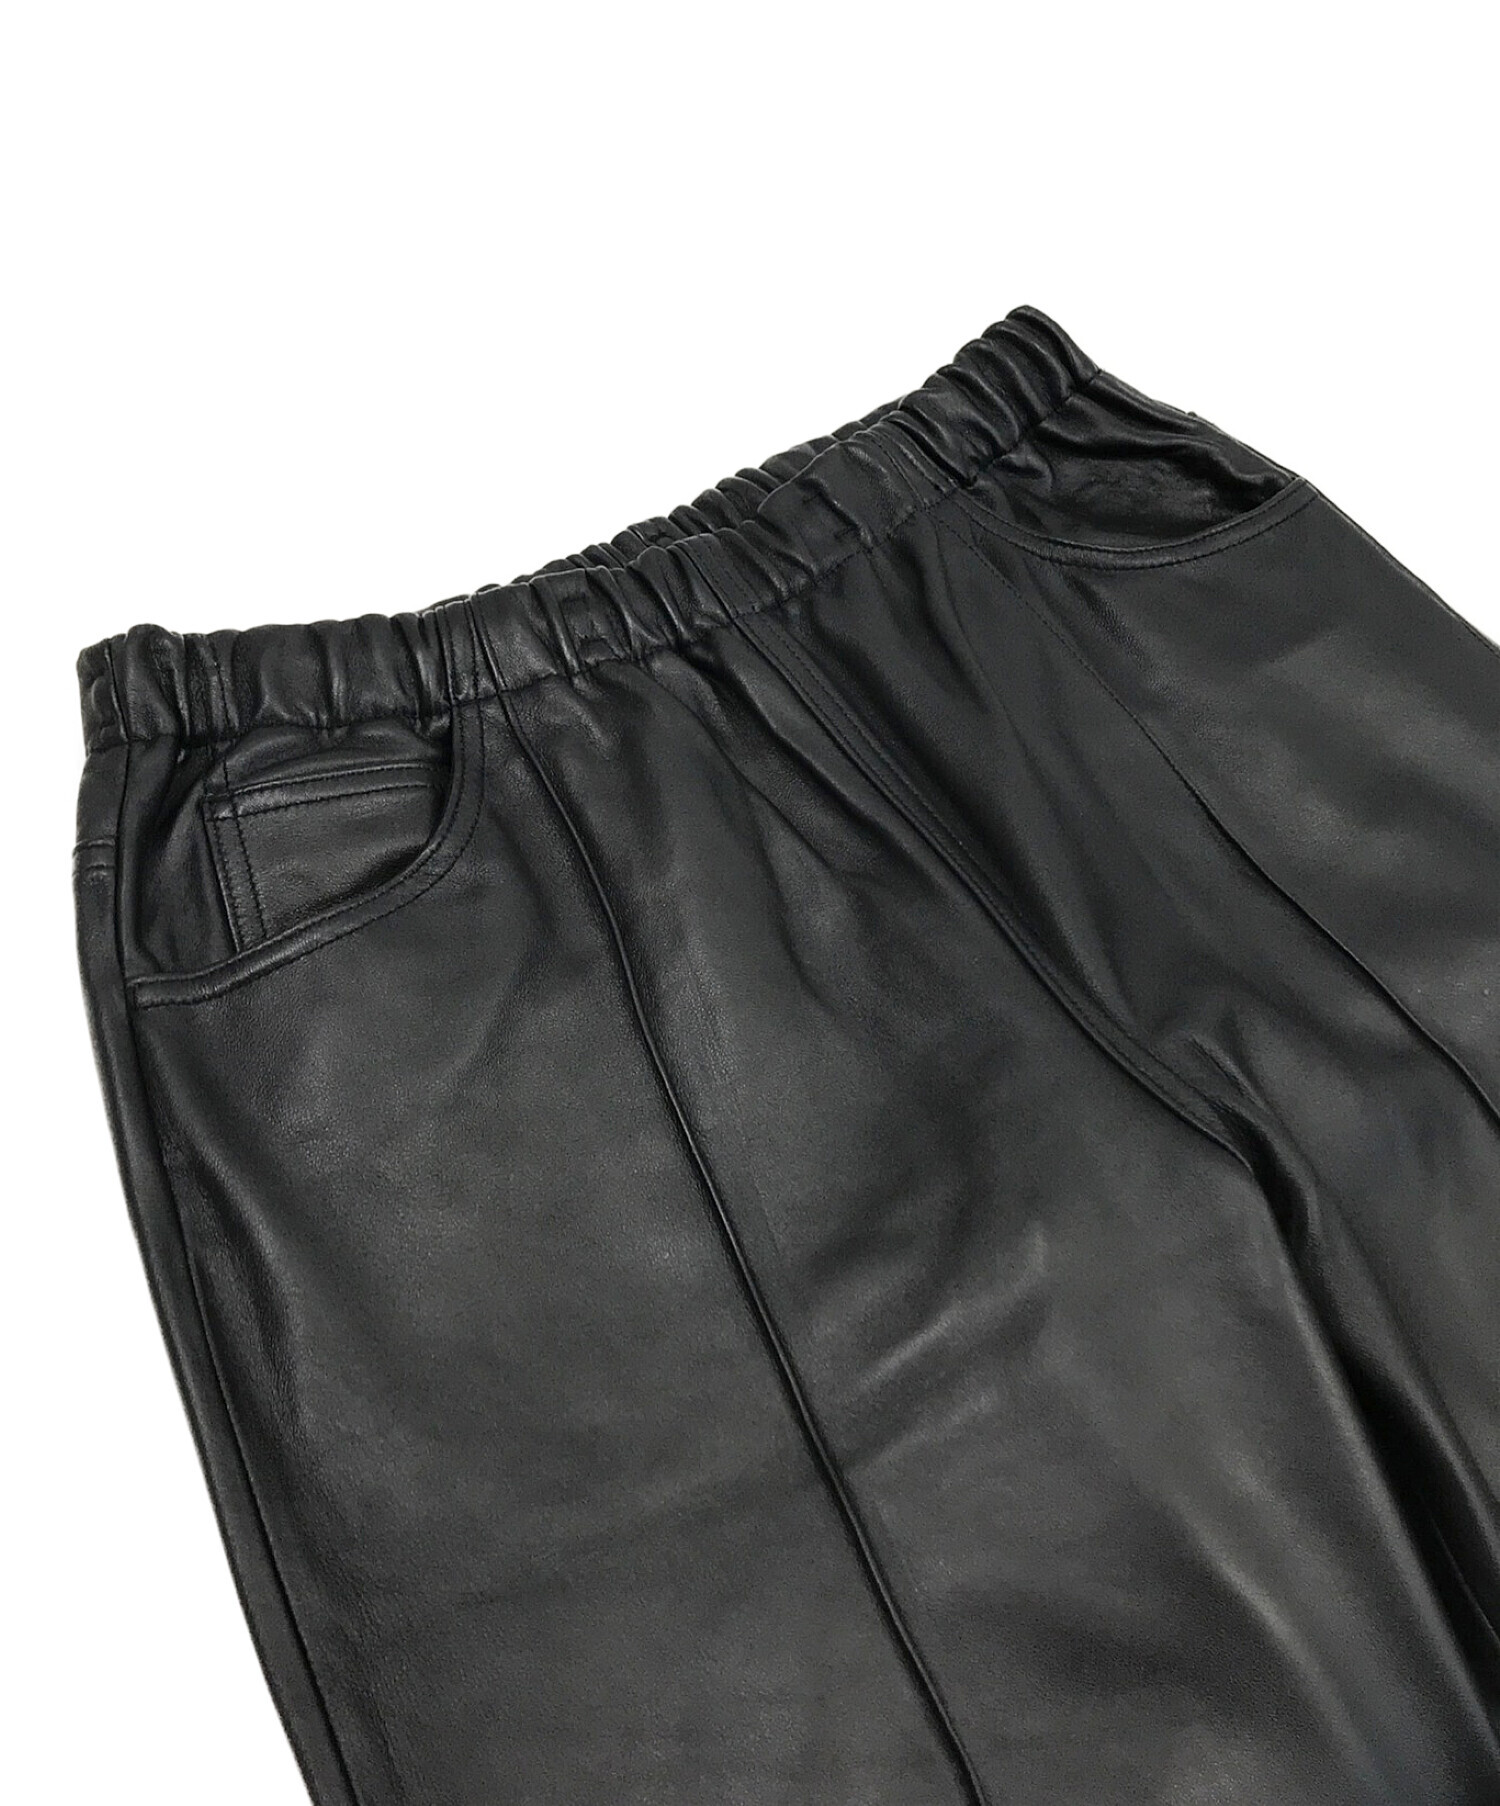 WESTOVERALLS (ウエストオーバーオールズ) LEATHER TRACK PANTS ブラック サイズ:S